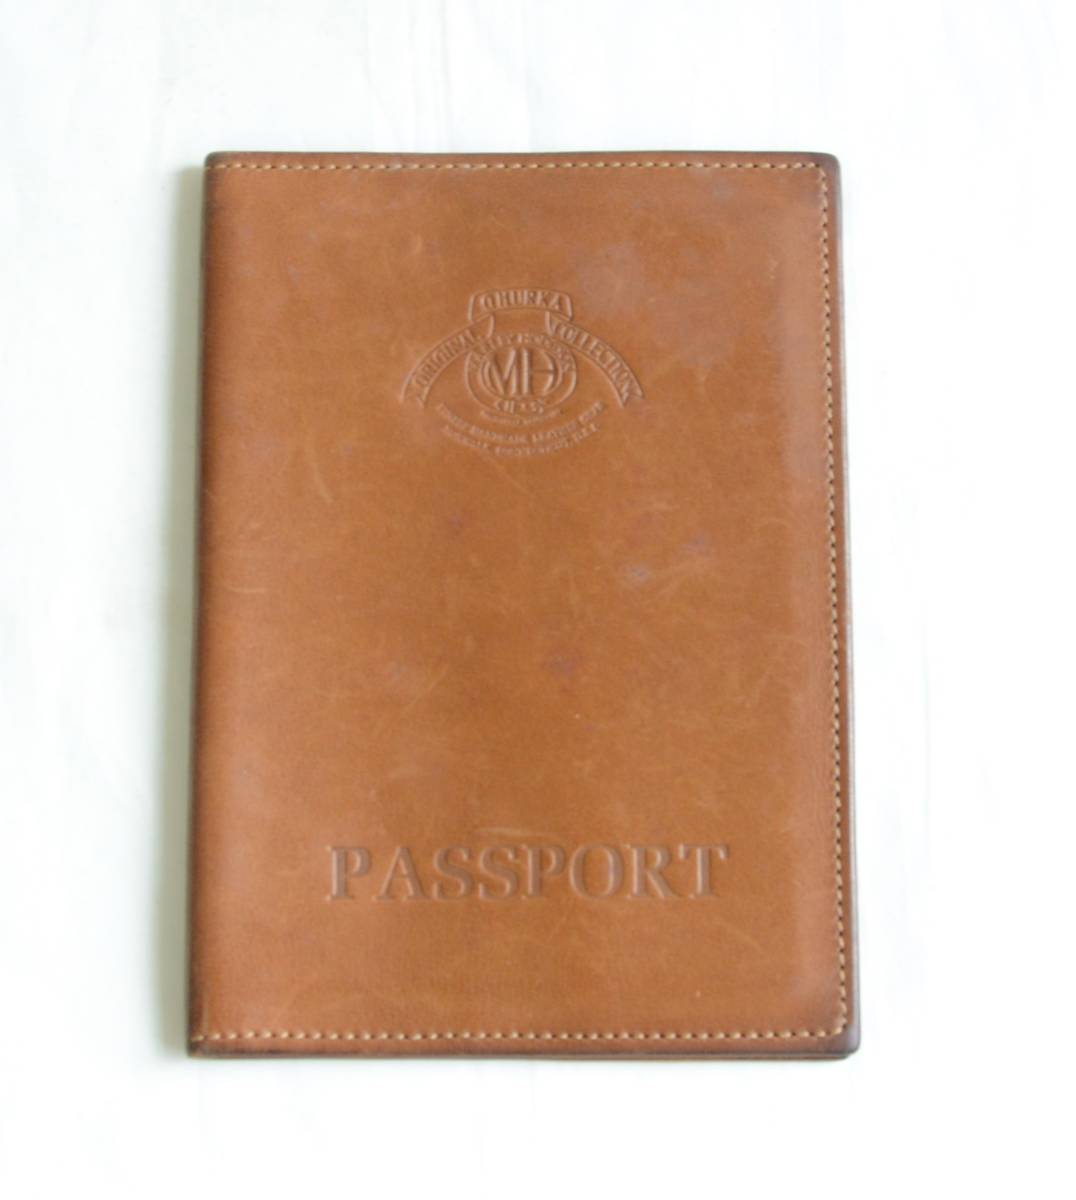 グルカ GHURKA MH刻印 レザー パスポートケース 箱付きの画像2